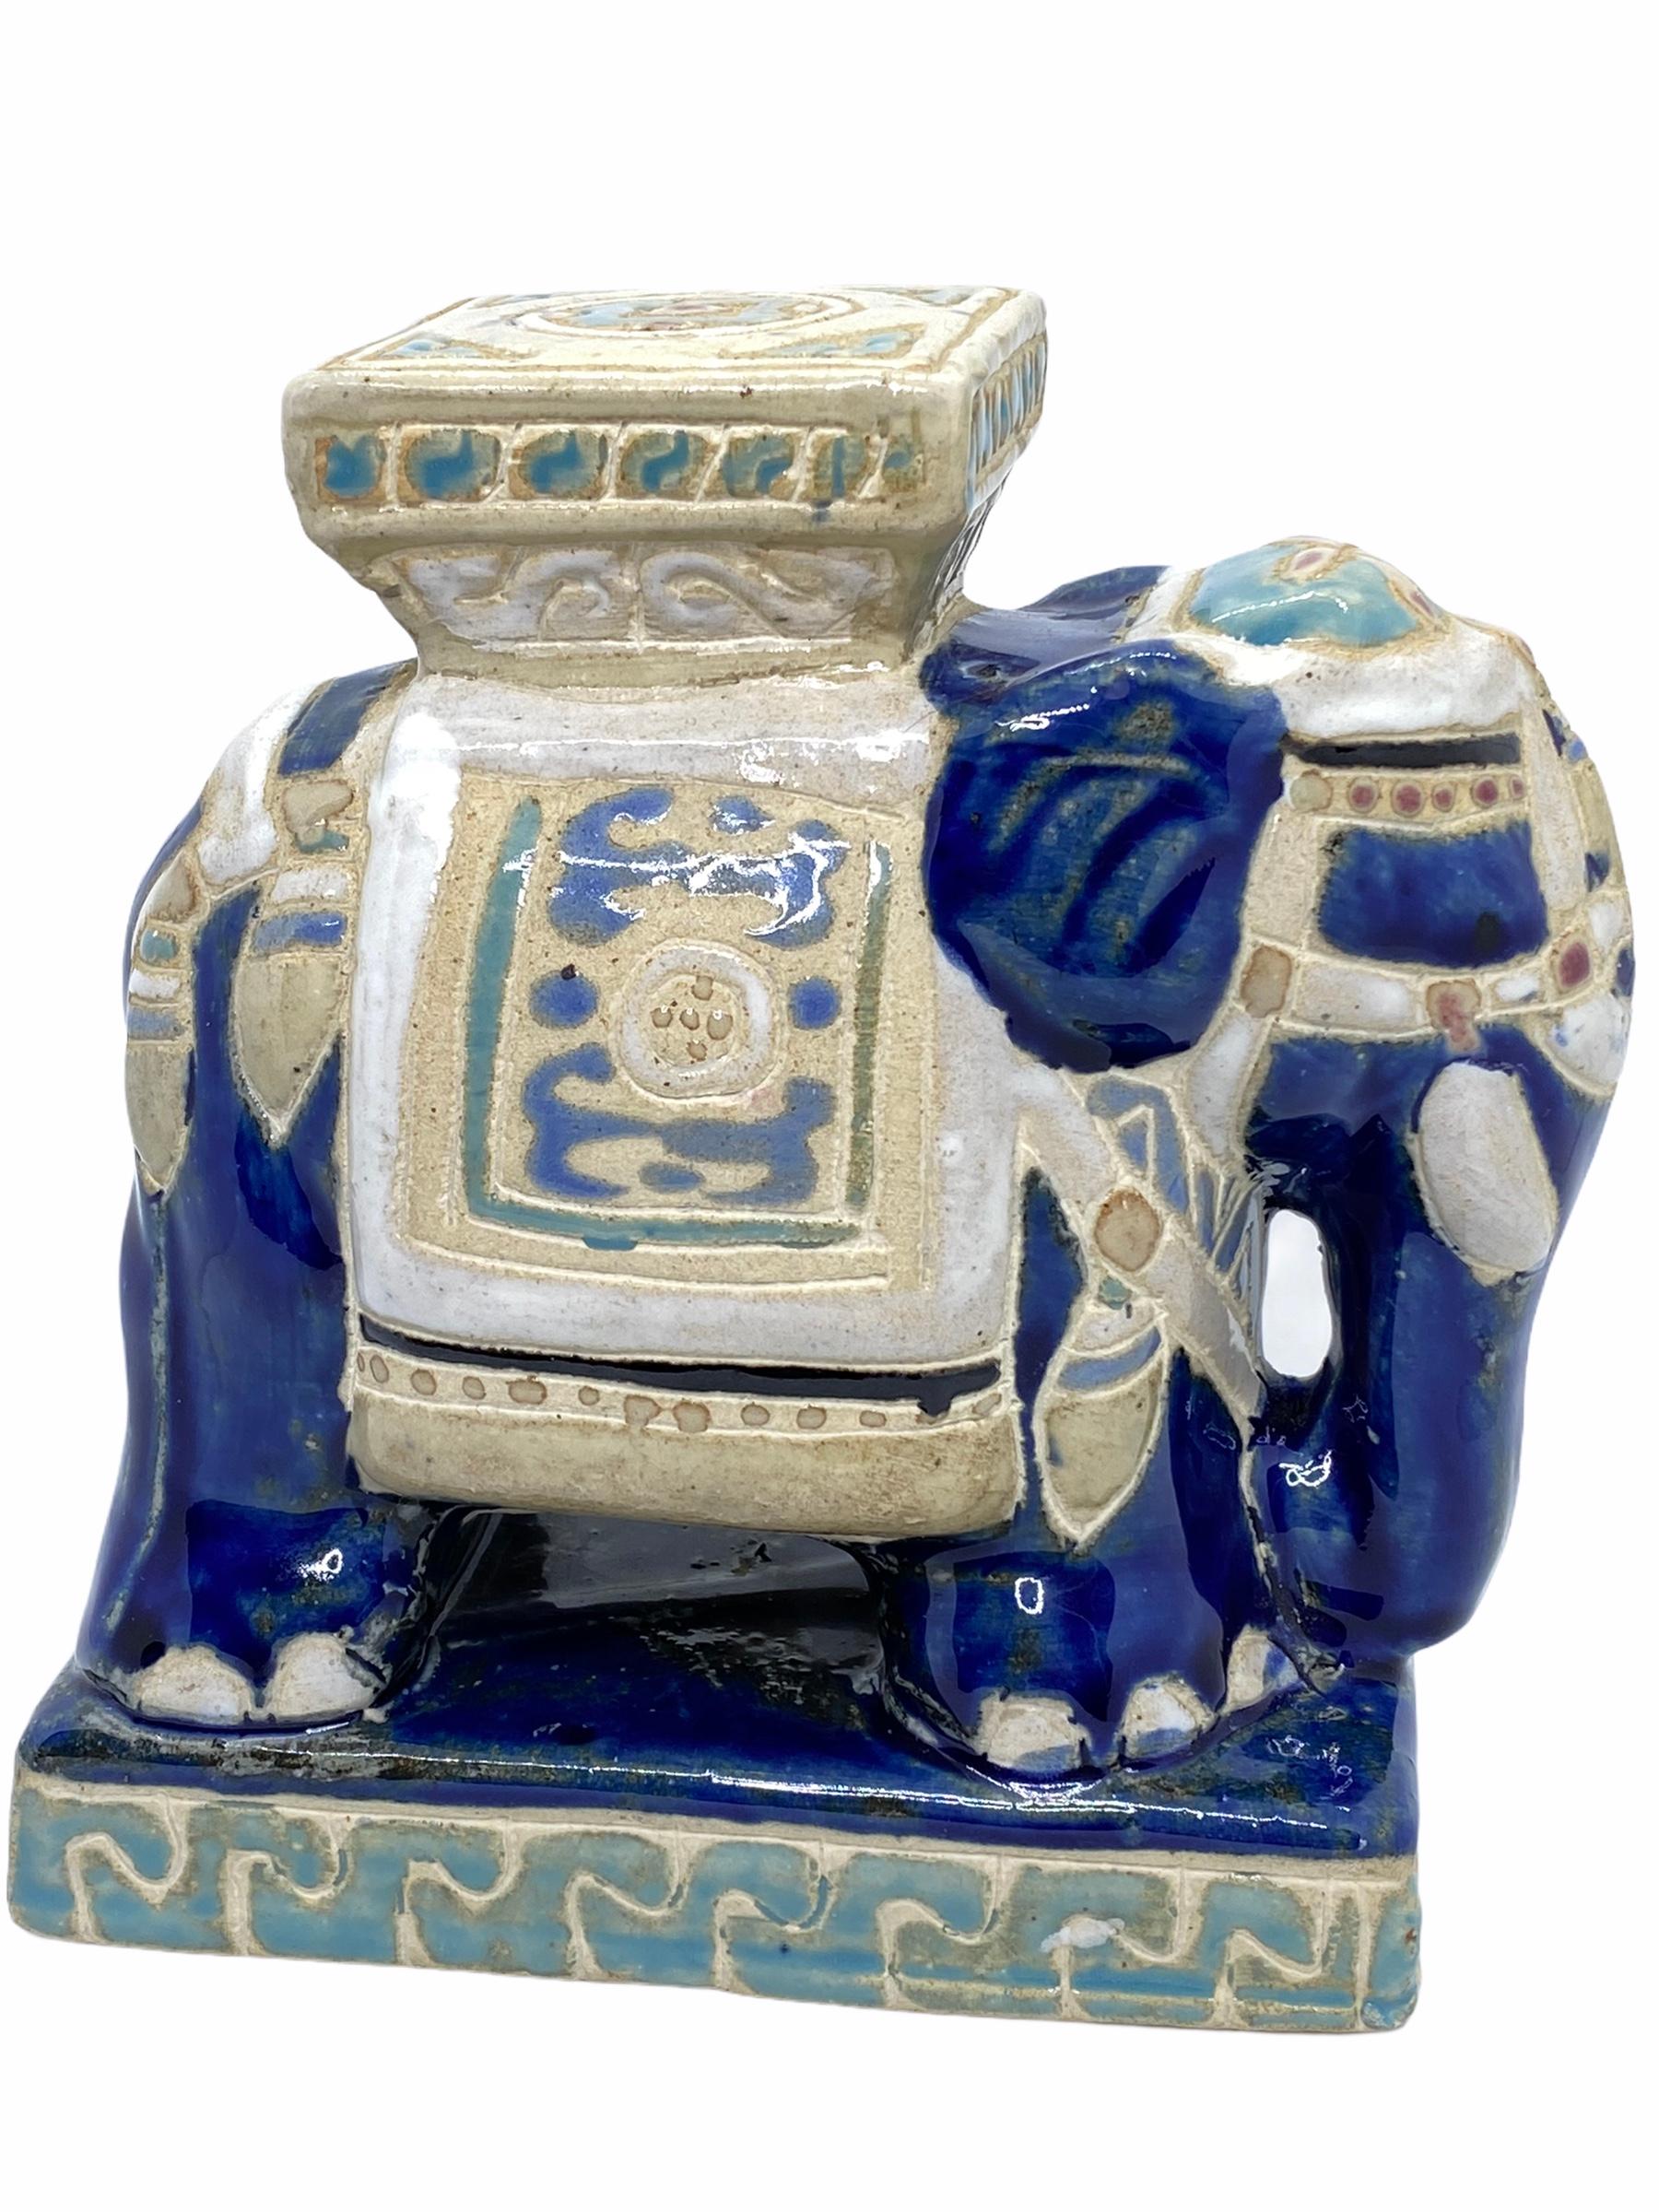 Petite Mitte des 20. Jahrhunderts glasierte Keramik Elefant Blumentopf Sitz. Handgefertigt aus Keramik. Eine schöne Ergänzung für Ihr Haus, Ihre Terrasse oder Ihren Garten.
 